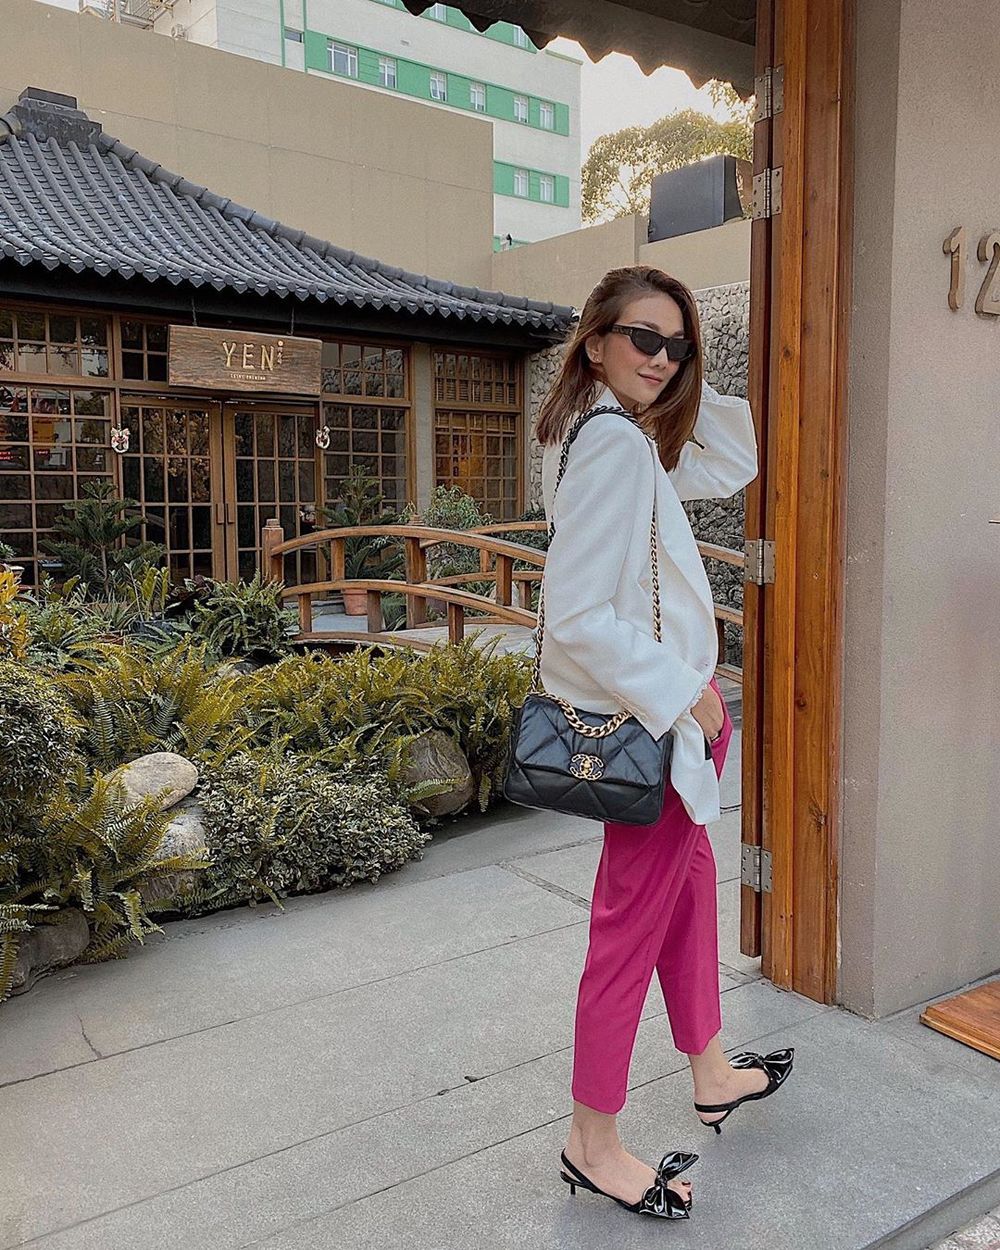  
Thanh Hằng phá cách với bộ cánh hơi hướng công sở, cô chọn quần vải màu hồng tím, blazer lụa trắng và đeo túi xách Chanel. (Ảnh: Instagram nhân vật)